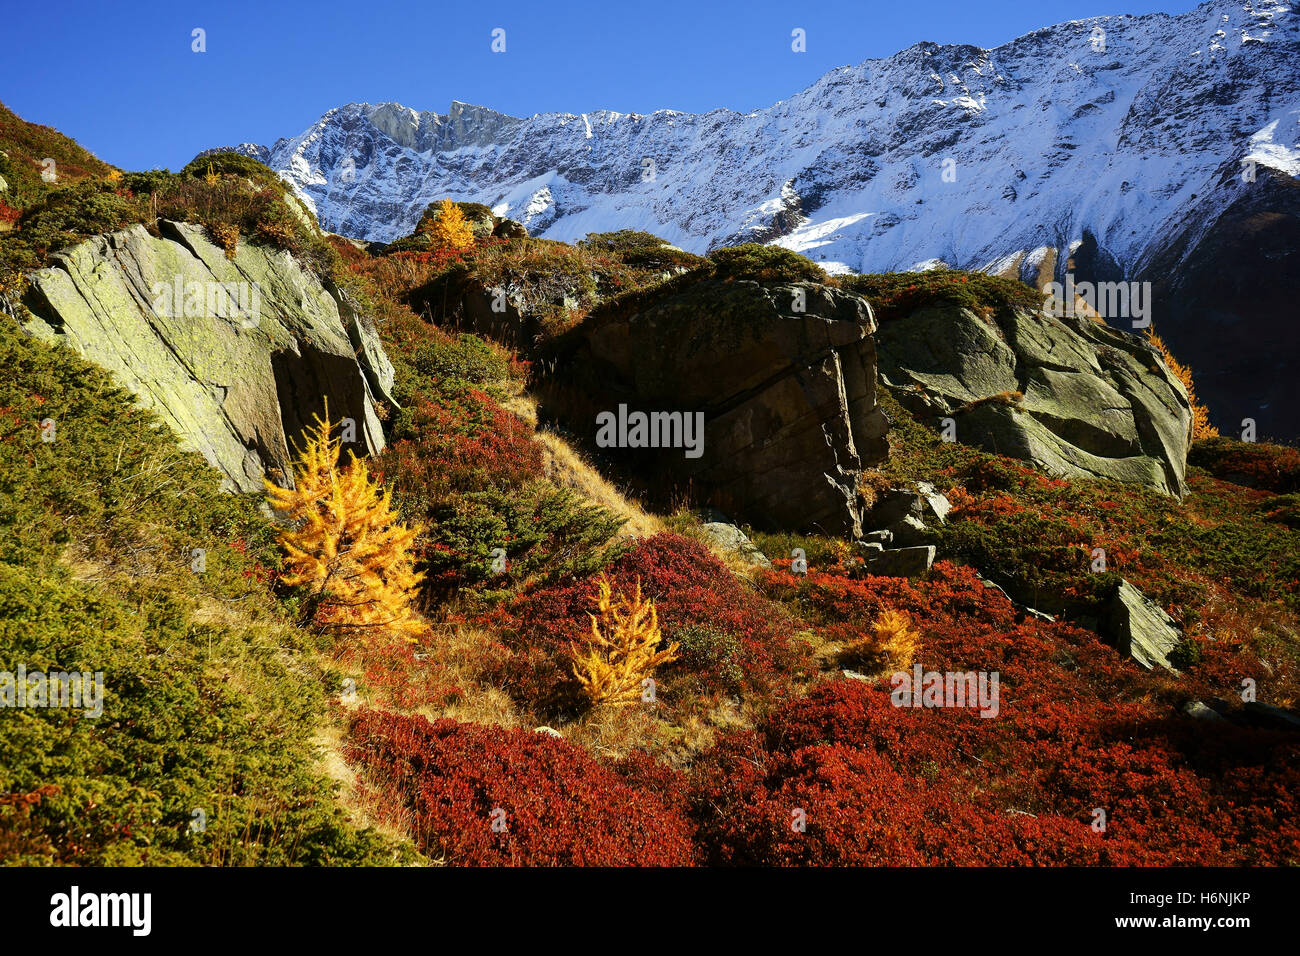 Herbst Farben Beow Anensee, Larh Bäume gelb, Lötschentall, Heidelbeere Büsche rot, frischer Schnee auf Berge, Valais, Schweizer Alpen, S Stockfoto